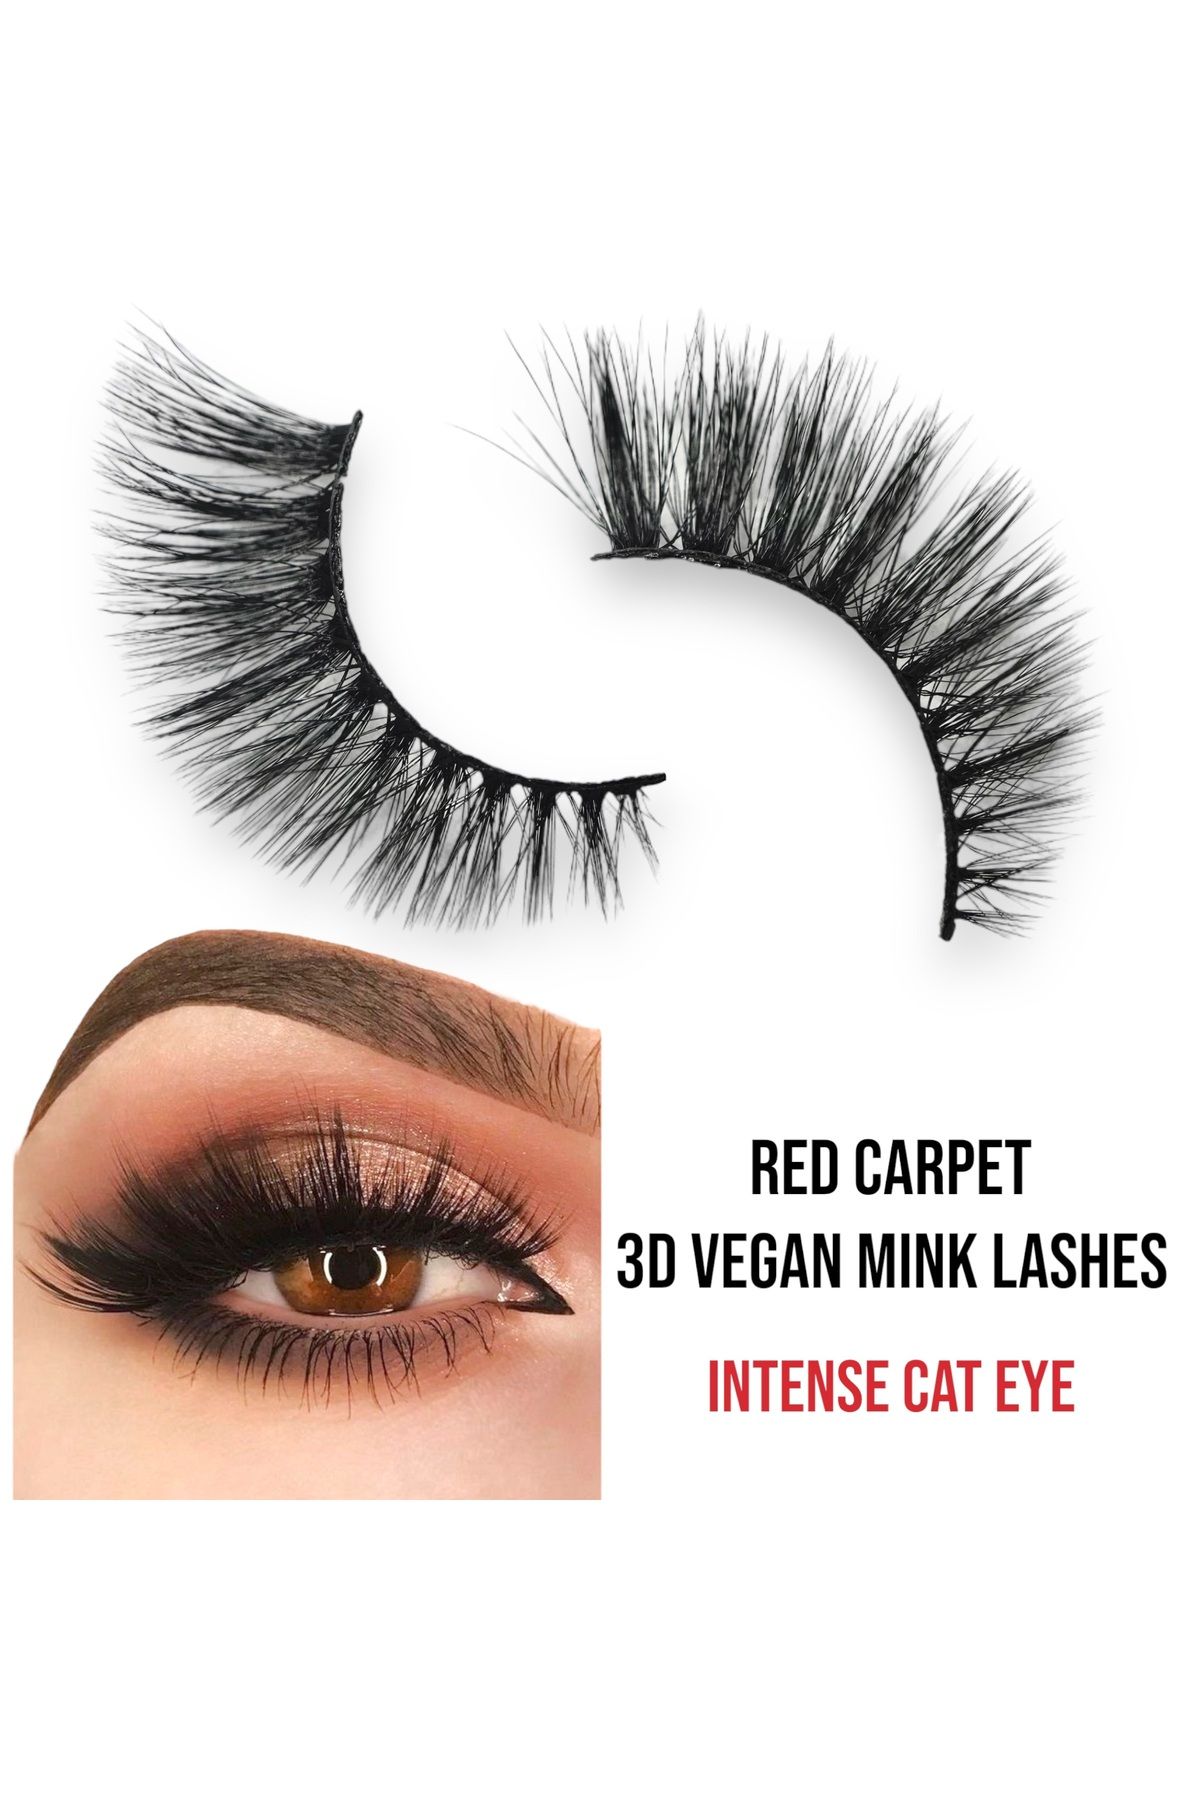 EDA LUXURY BEAUTY Red Carpet 3d Faux Mink Takma Kirpik Uzun Yoğun Çekik Çift Katlı Cat Eye Vegan Fake Eyelashes